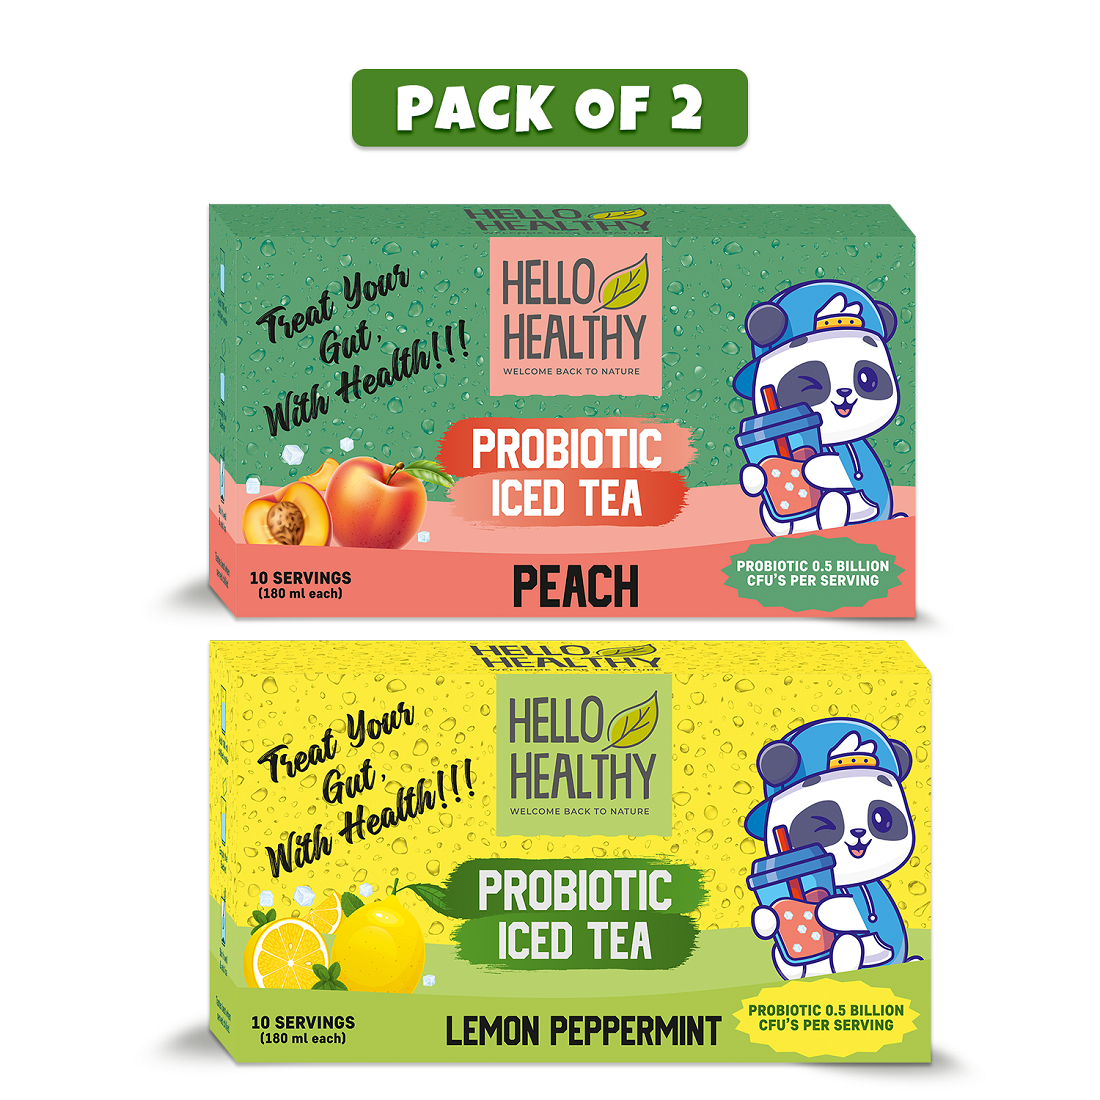 Hello Healthy Probiotic Peach & Lemon Peppermint Iced Tea Pack of 2 Set (20 Sachets) Lemon, Peach Iced Tea Box  (2 x 10 Bags)